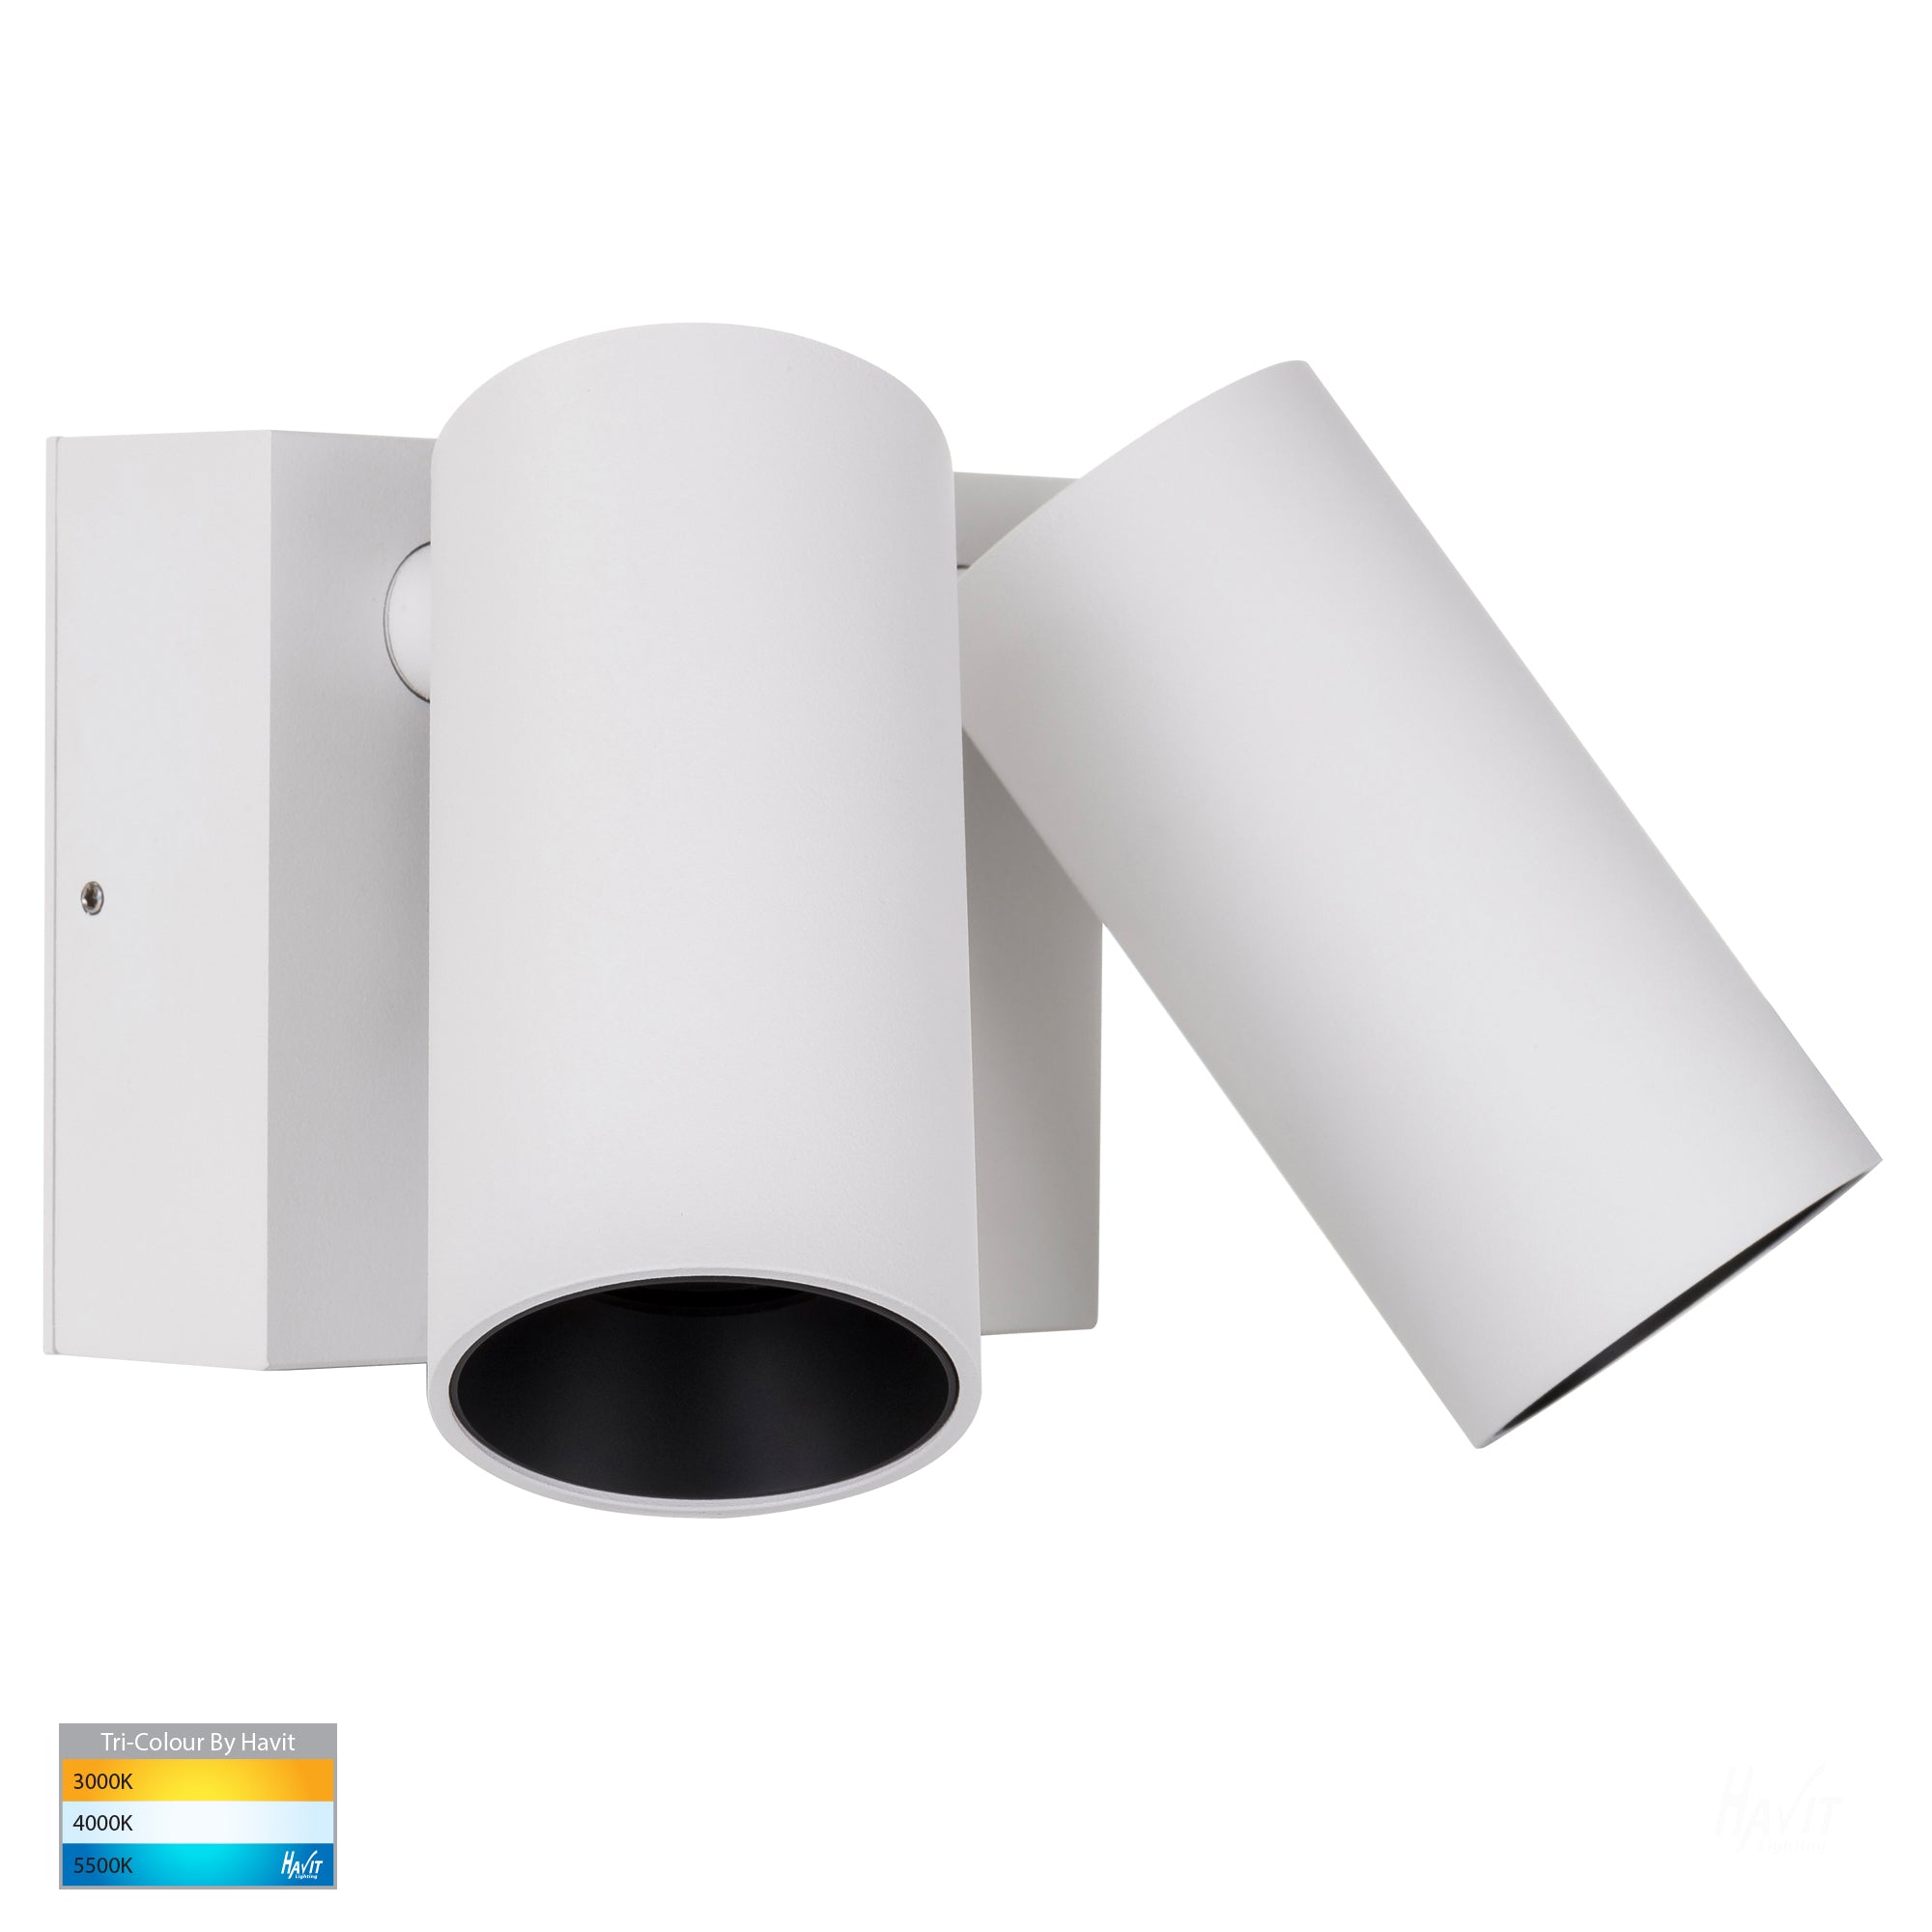 HV3684T-WHT - Revo White Light Double Havit Adjustable – Wall With Lighting Sensor